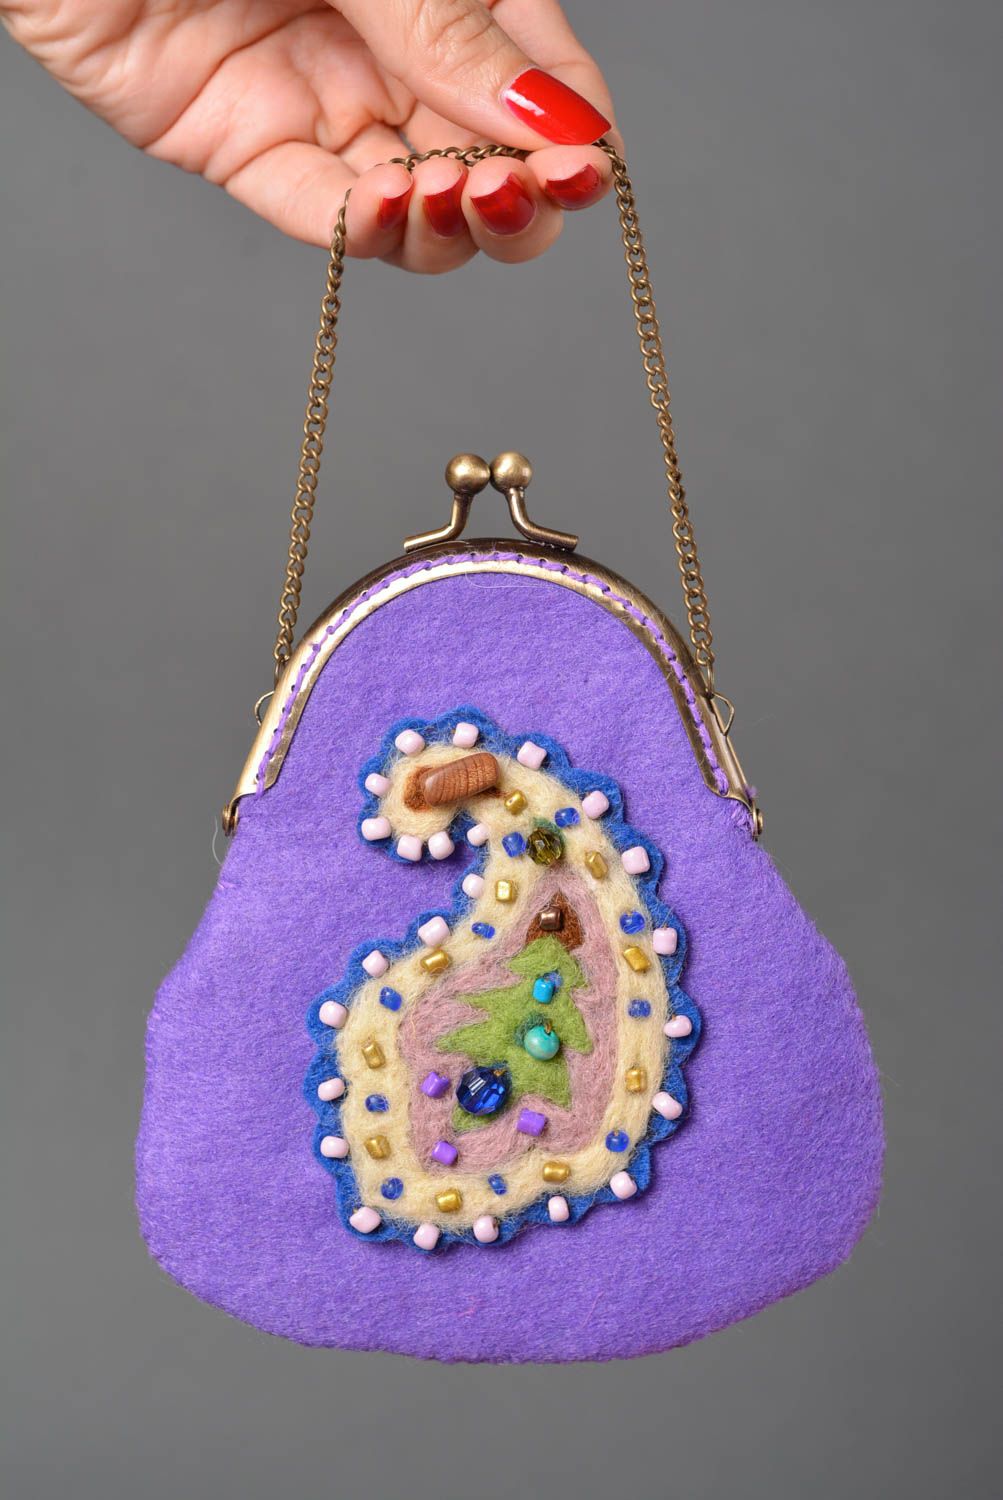 Сумка ручной работы женский кошелек фиолетовый на цепочке сумка из шерсти фото 2